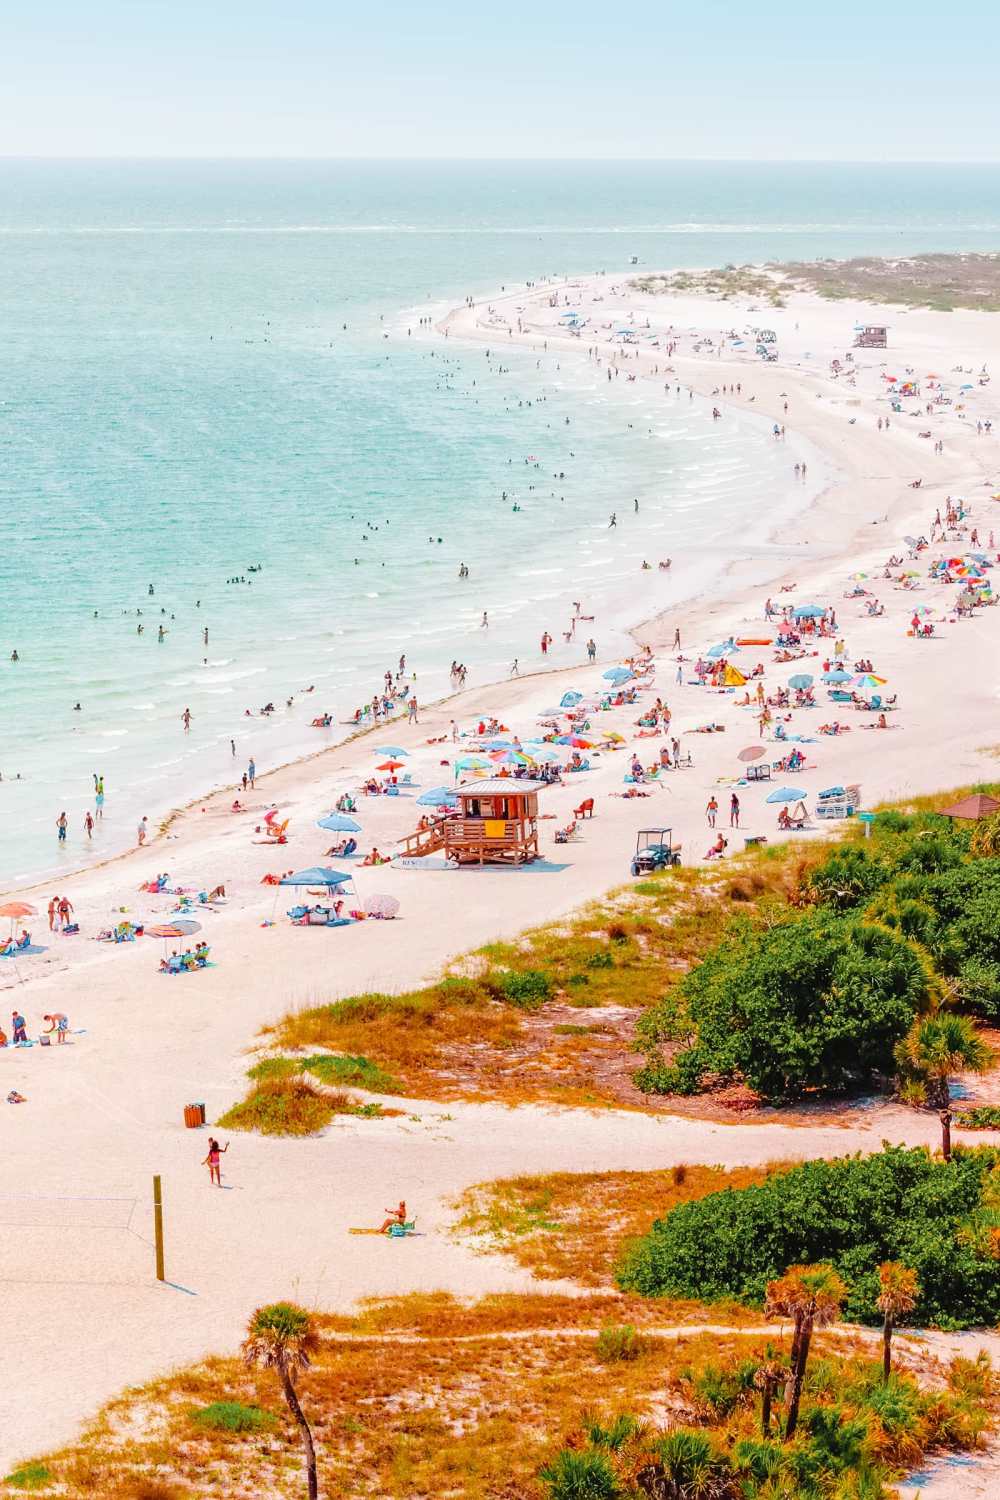  Самые лучшие пляжи Флориды для посещения "width =" 1000 "height =" 1500 "data-jpibfi-post-excerpt =" "data-jpibfi-post-url =" https://handluggageonly.co.uk/2021/07/12/14-very-best-beaches-in -florida-to-visit / "data-jpibfi-post-title =" 14 самых лучших пляжей Флориды для посещения "data-jpibfi-src =" https://i1.wp.com/handluggageonly.co.uk/wp -content / uploads / 2021/07 / HandLgageOnly-5.jpg? resize = 1000% 2C1500 & ssl = 1 "data-recalc-dims =" 1 "/> </p>
<p> Расположенный в великолепном Мексиканском заливе, Siesta Key — это полностью блаженный барьерный остров с очарованием, столь же привлекательным, как и они сами! </p>
<p> А еще лучше, пляжи Сиеста-Ки никогда не разочаруют, и это одни из лучших пляжей во Флориде для посещения. С сияющим белым песком и жаркой температурой воды. это место, куда можно пойти всей семьей. </p>
<p> Это особенно y правда, поскольку волны немного спокойнее, чем на Атлантическом побережье; однако это не значит, что вам не следует проявлять особую осторожность. Помните, море может быть опасным. </p>
<p style=